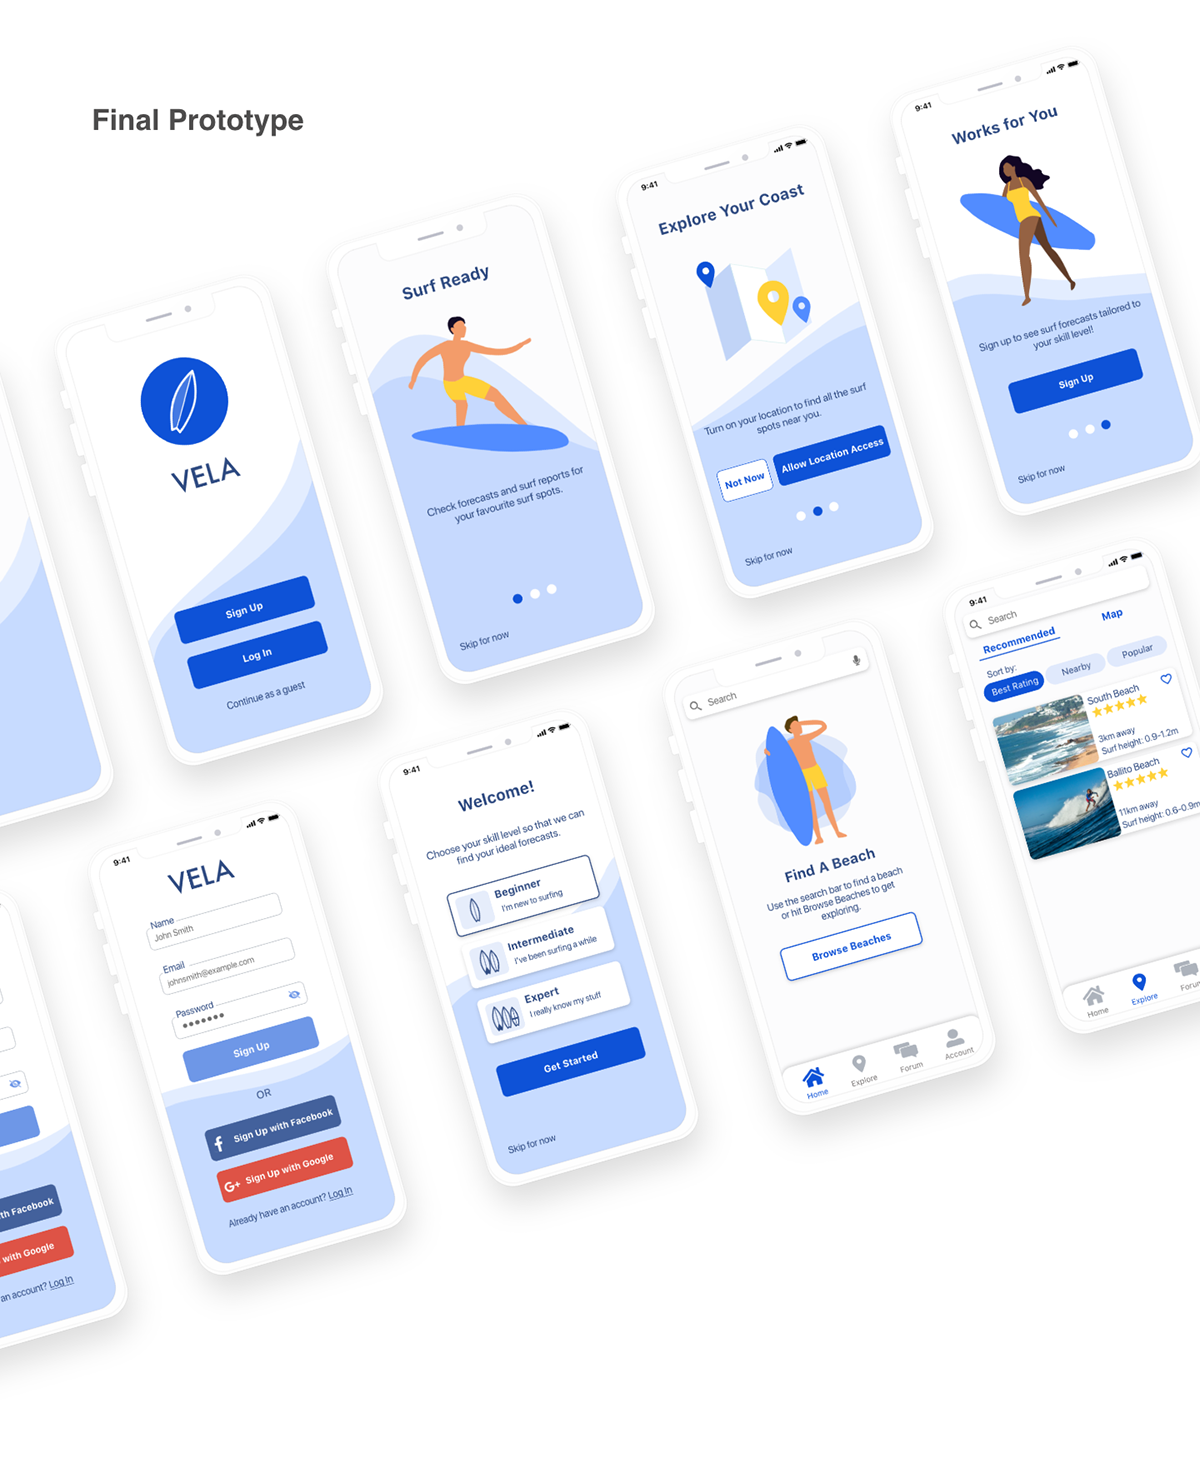 UI/UX Case Study: Redesign Mis Olas (My Waves) App, by Valeriadavila